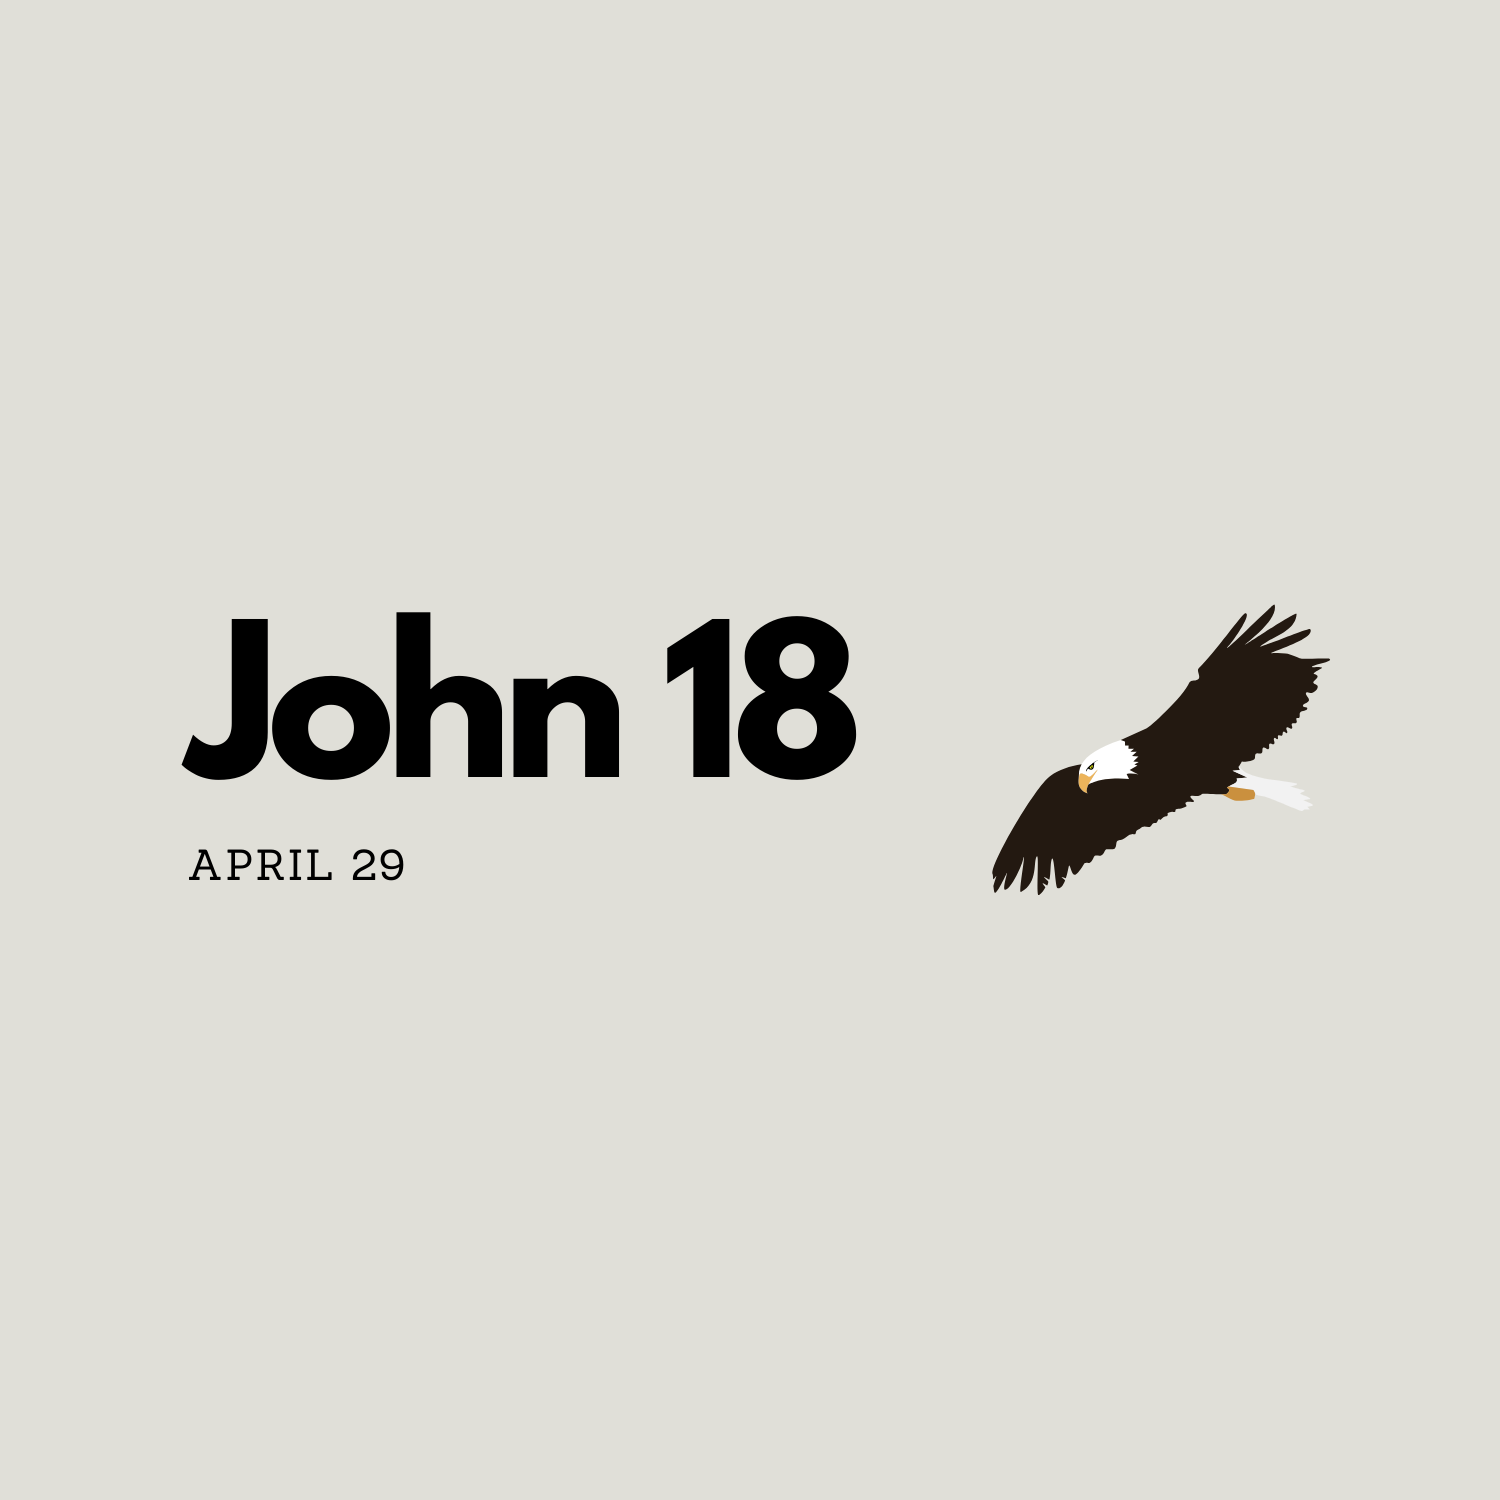 April 29: John 18